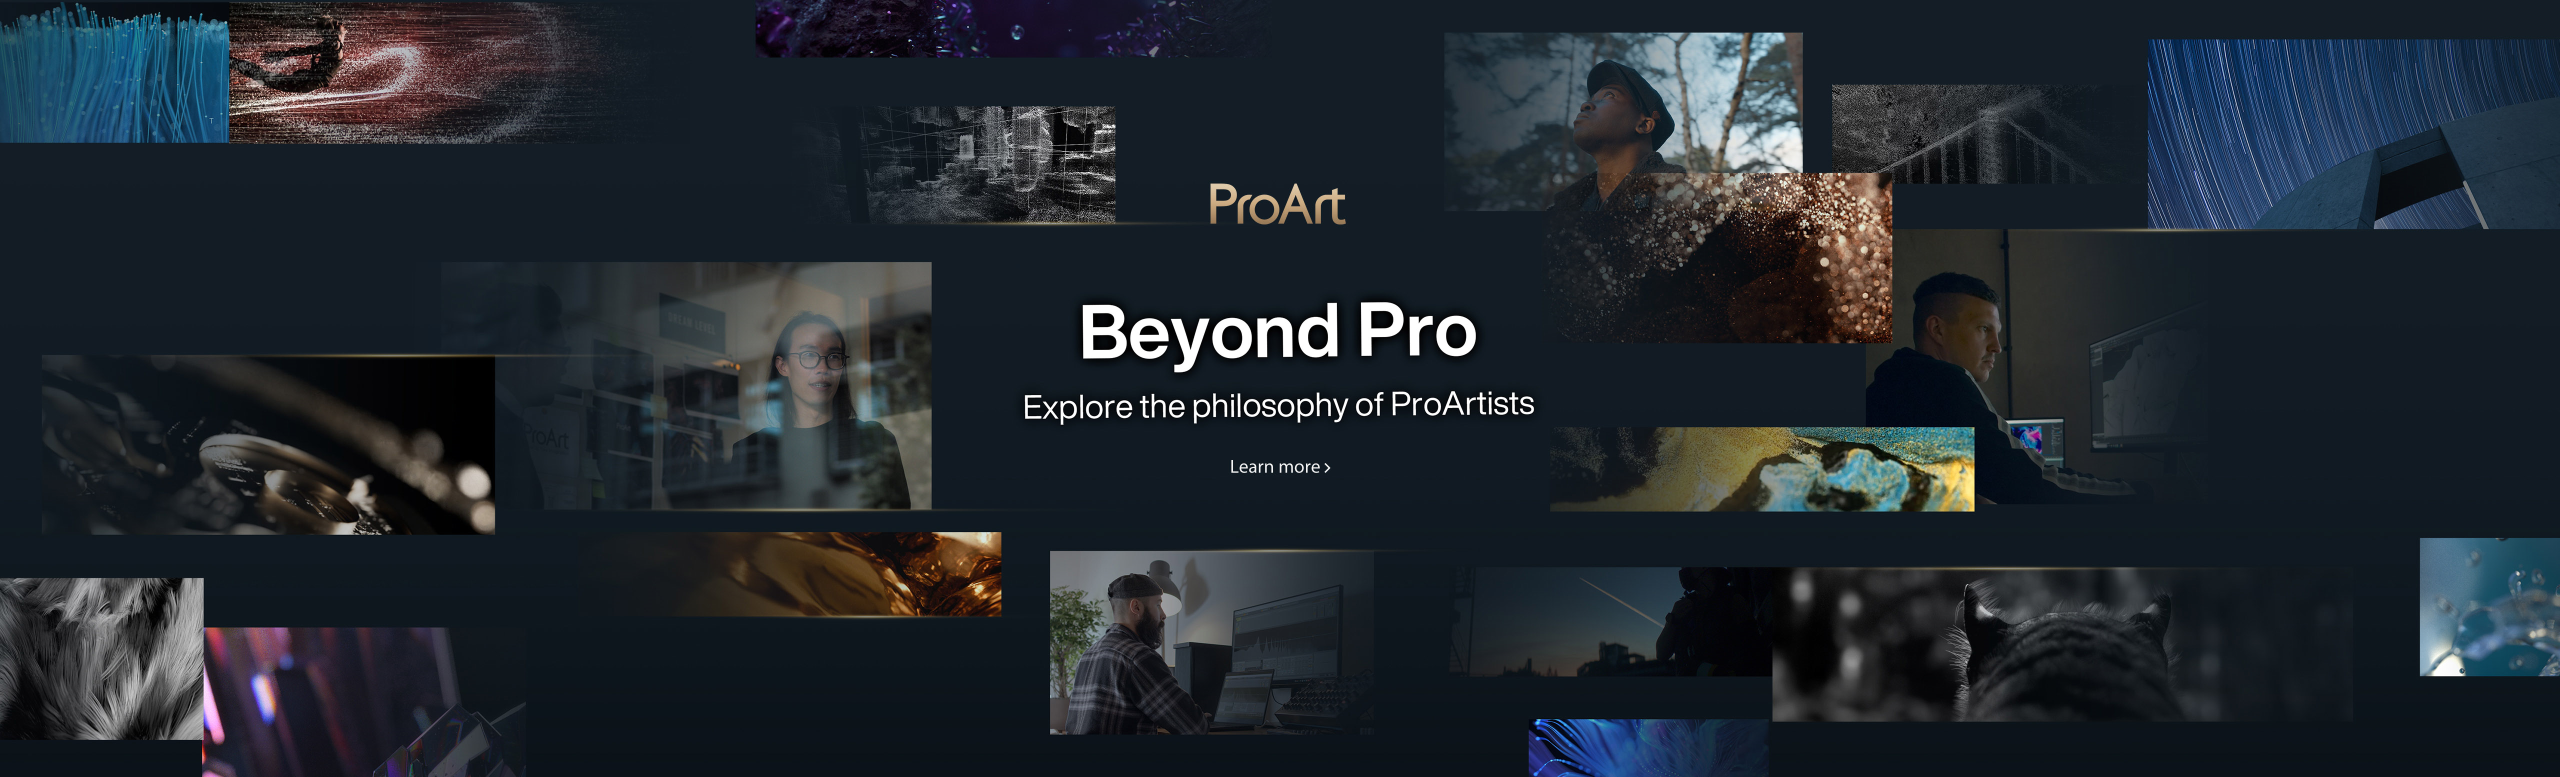 Aflați mai multe despre colaborarea dintre ProArt și studiourile din întreaga lume